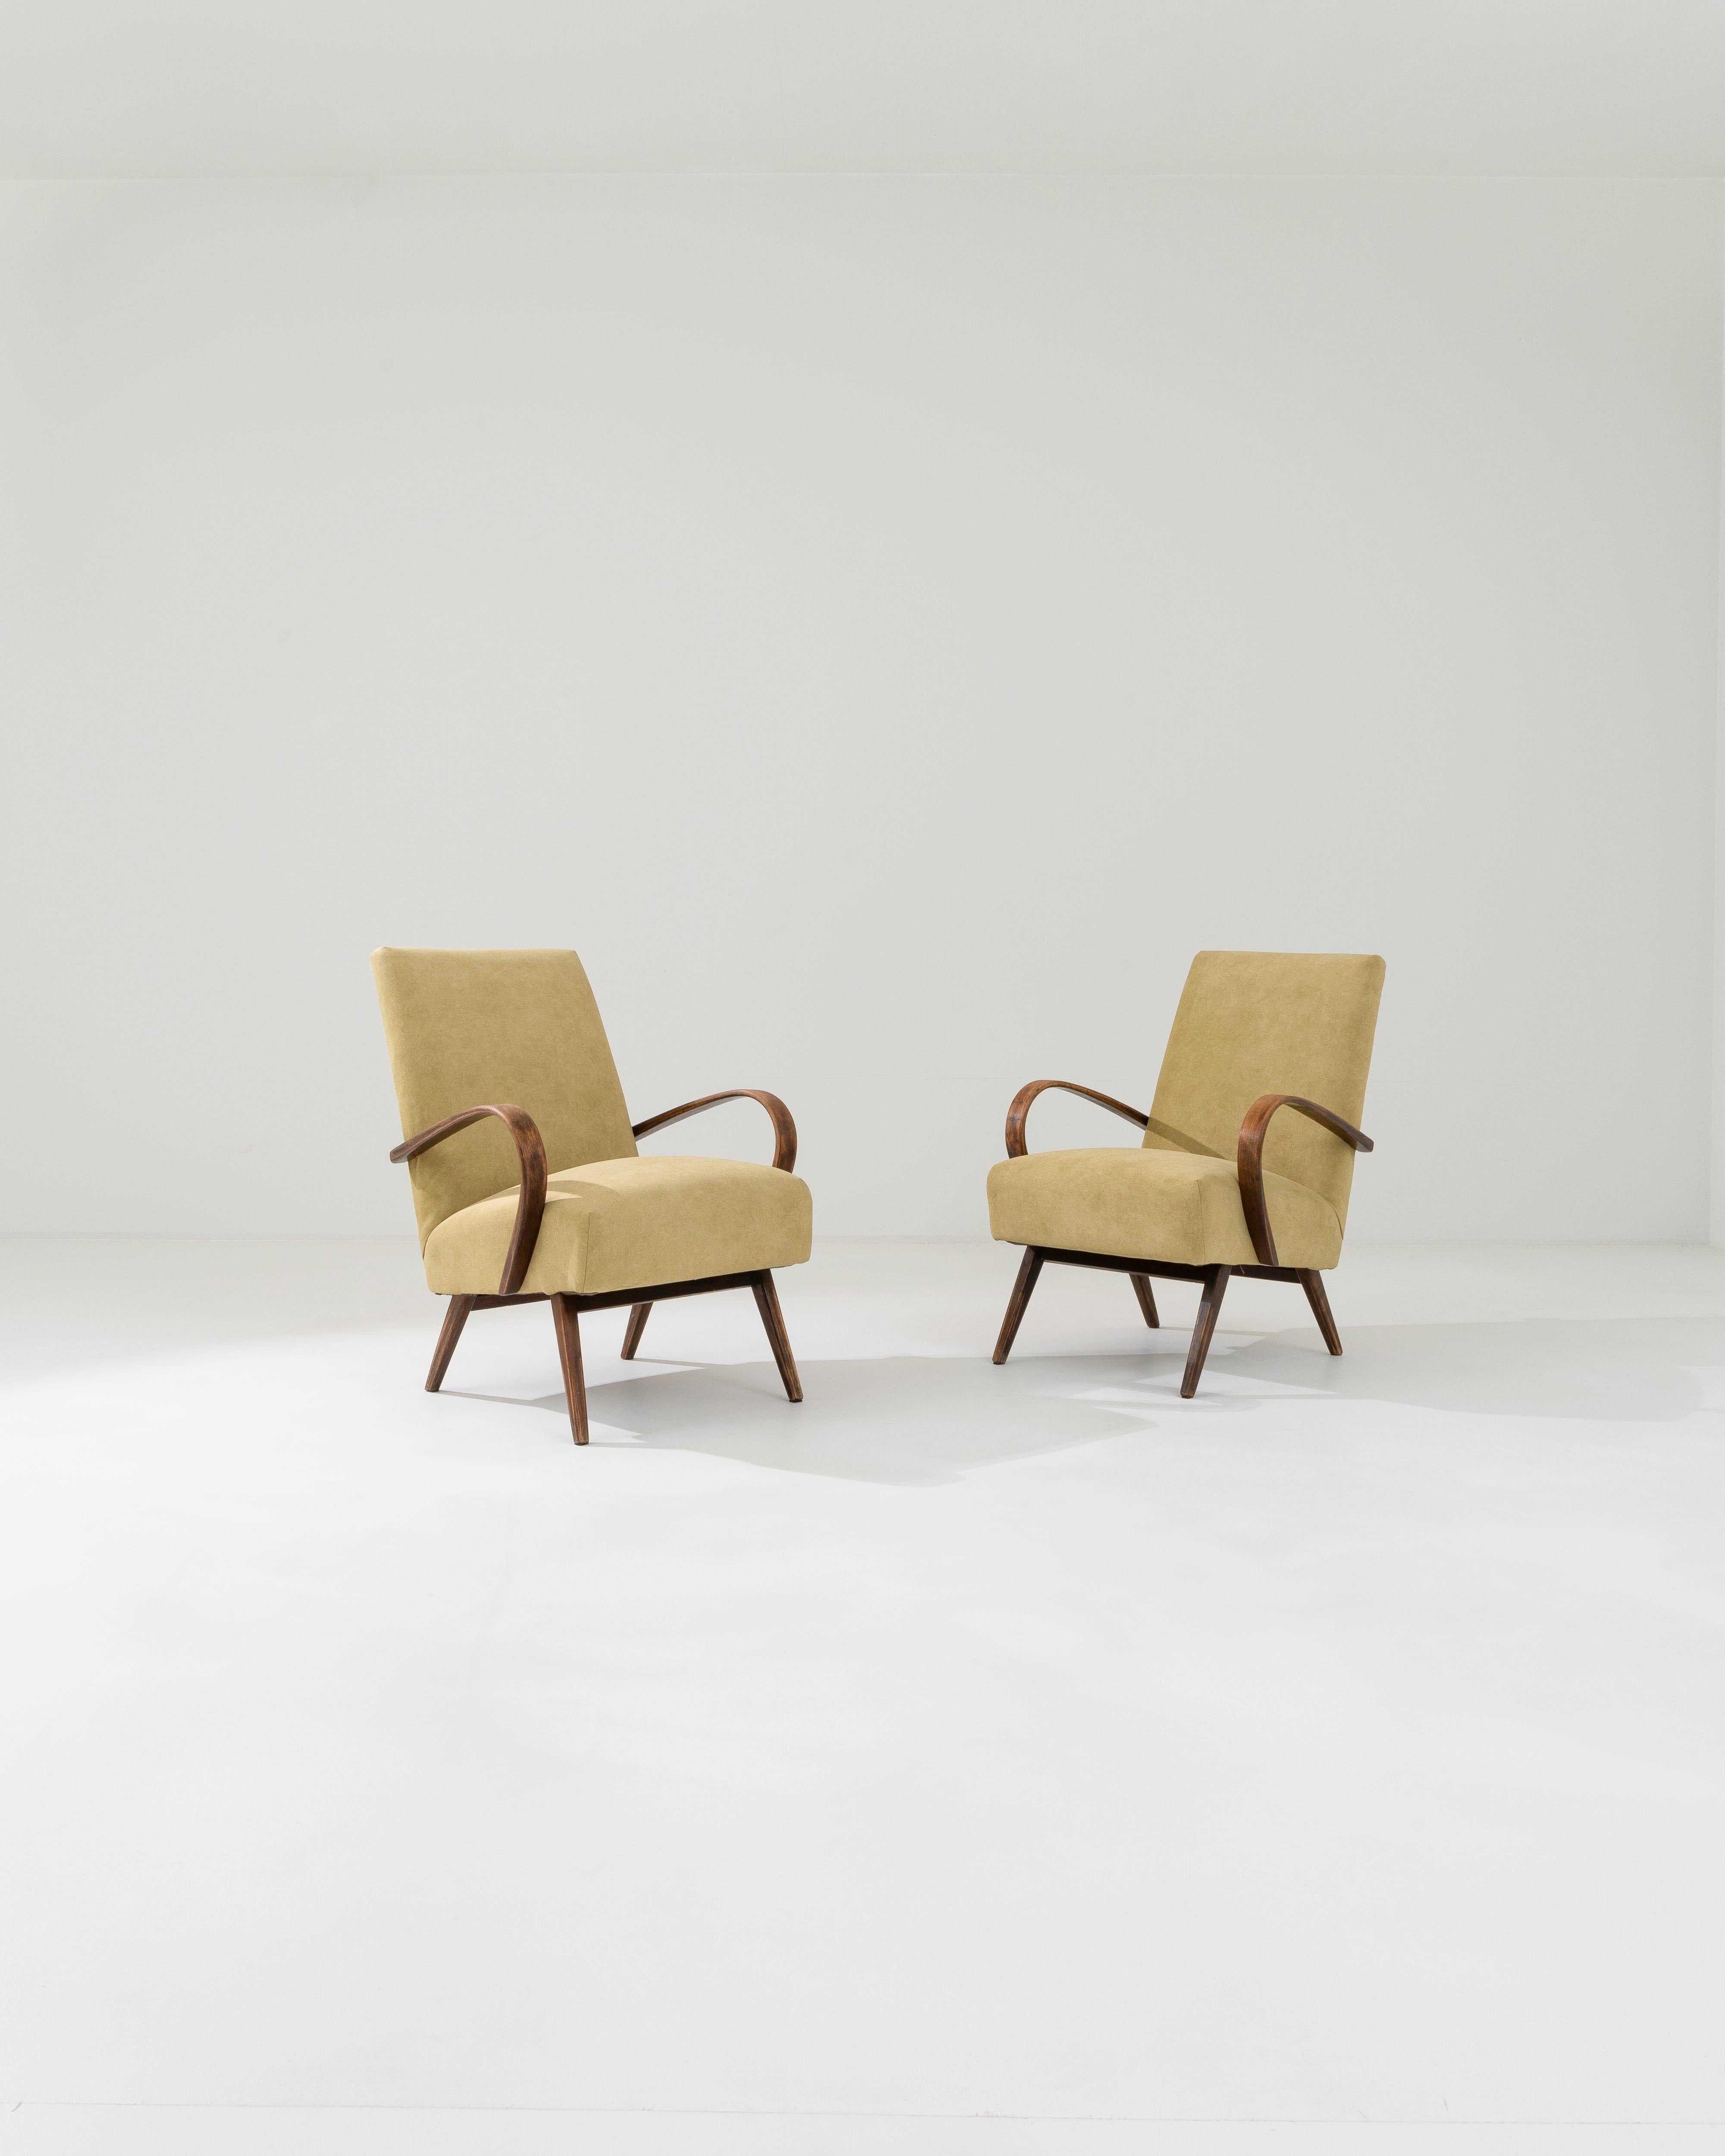 Fabriquée dans l'ancienne Tchécoslovaquie, cette paire de fauteuils en bois courbé datant d'environ 1950 a été retapissée avec un tissu ocre actualisé. Le revêtement a été choisi pour compléter l'élégance vintage du cadre en bois dur. Le jaune chaud